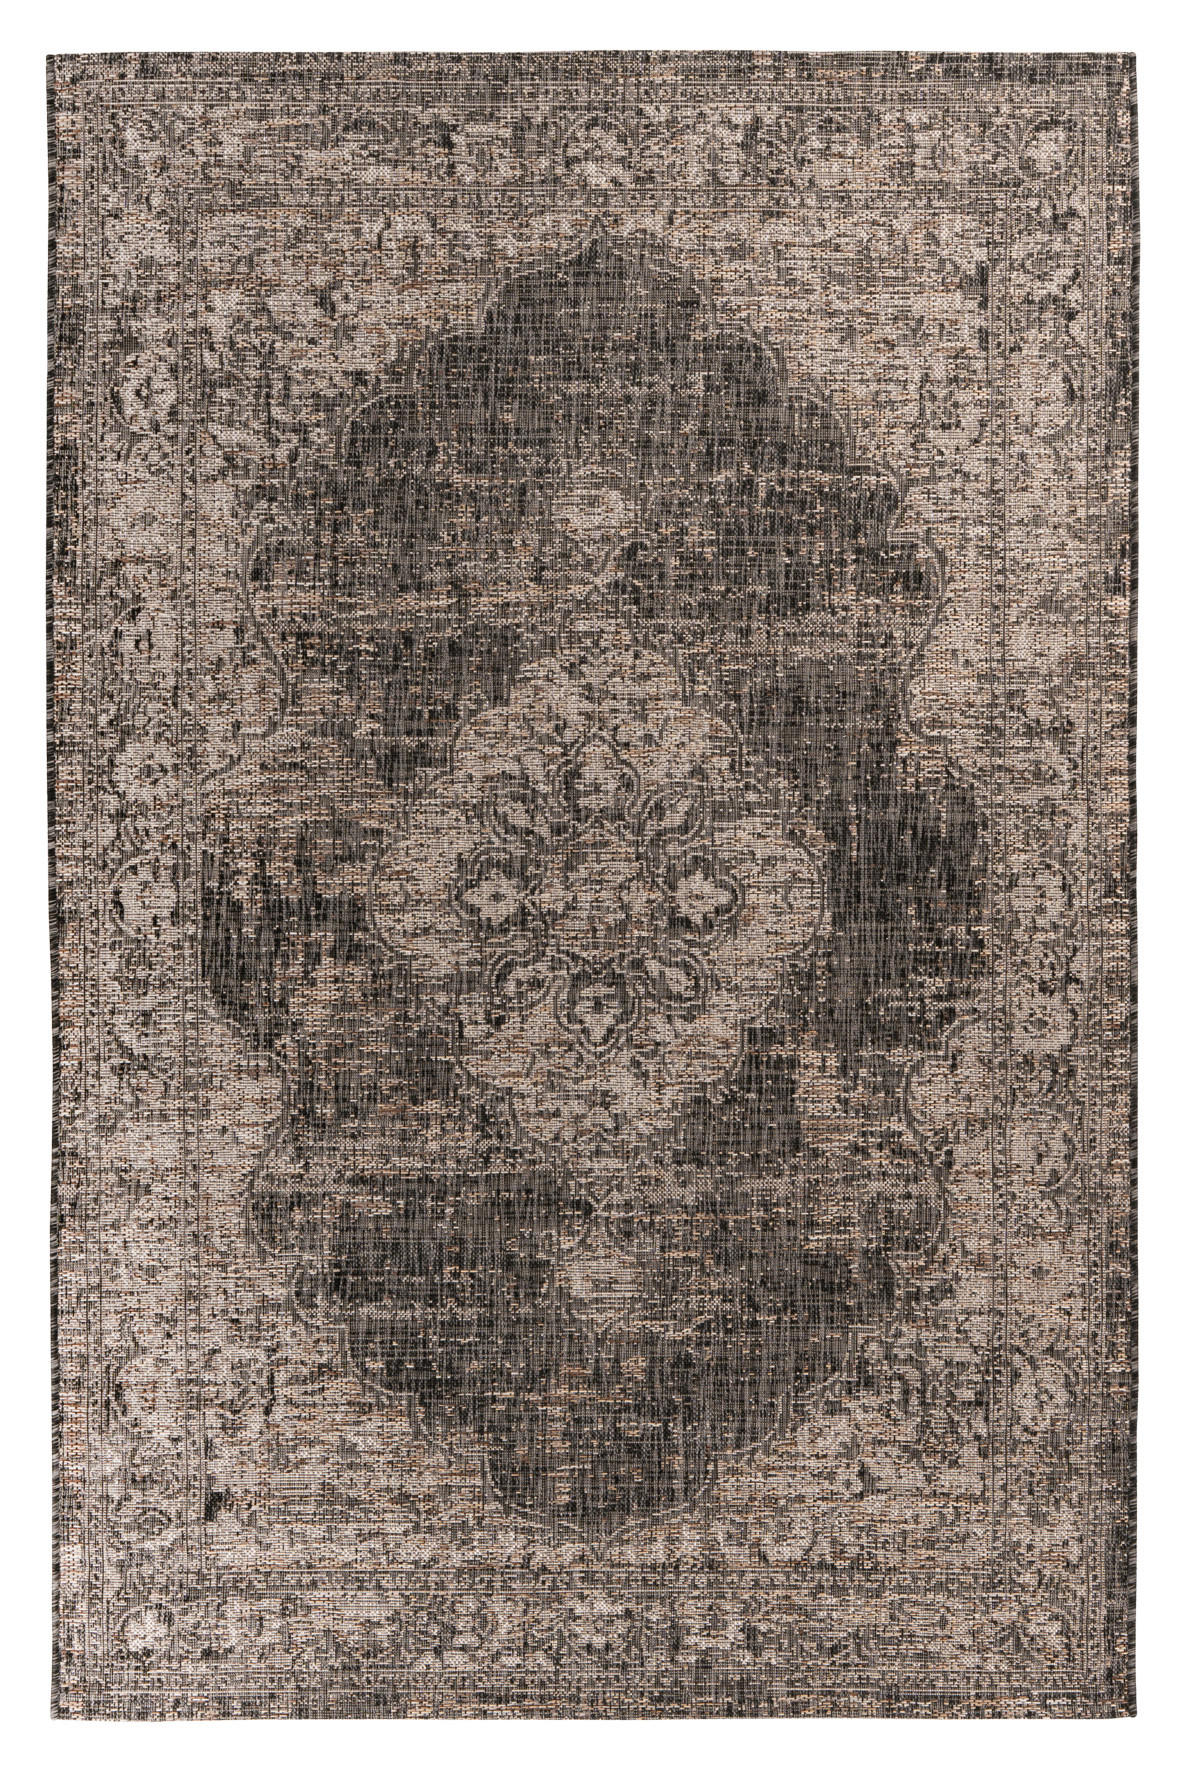 OUTDOORTEPPICH 80/150 cm  - Graubraun/Grau, Design, Textil (80/150cm) - Novel